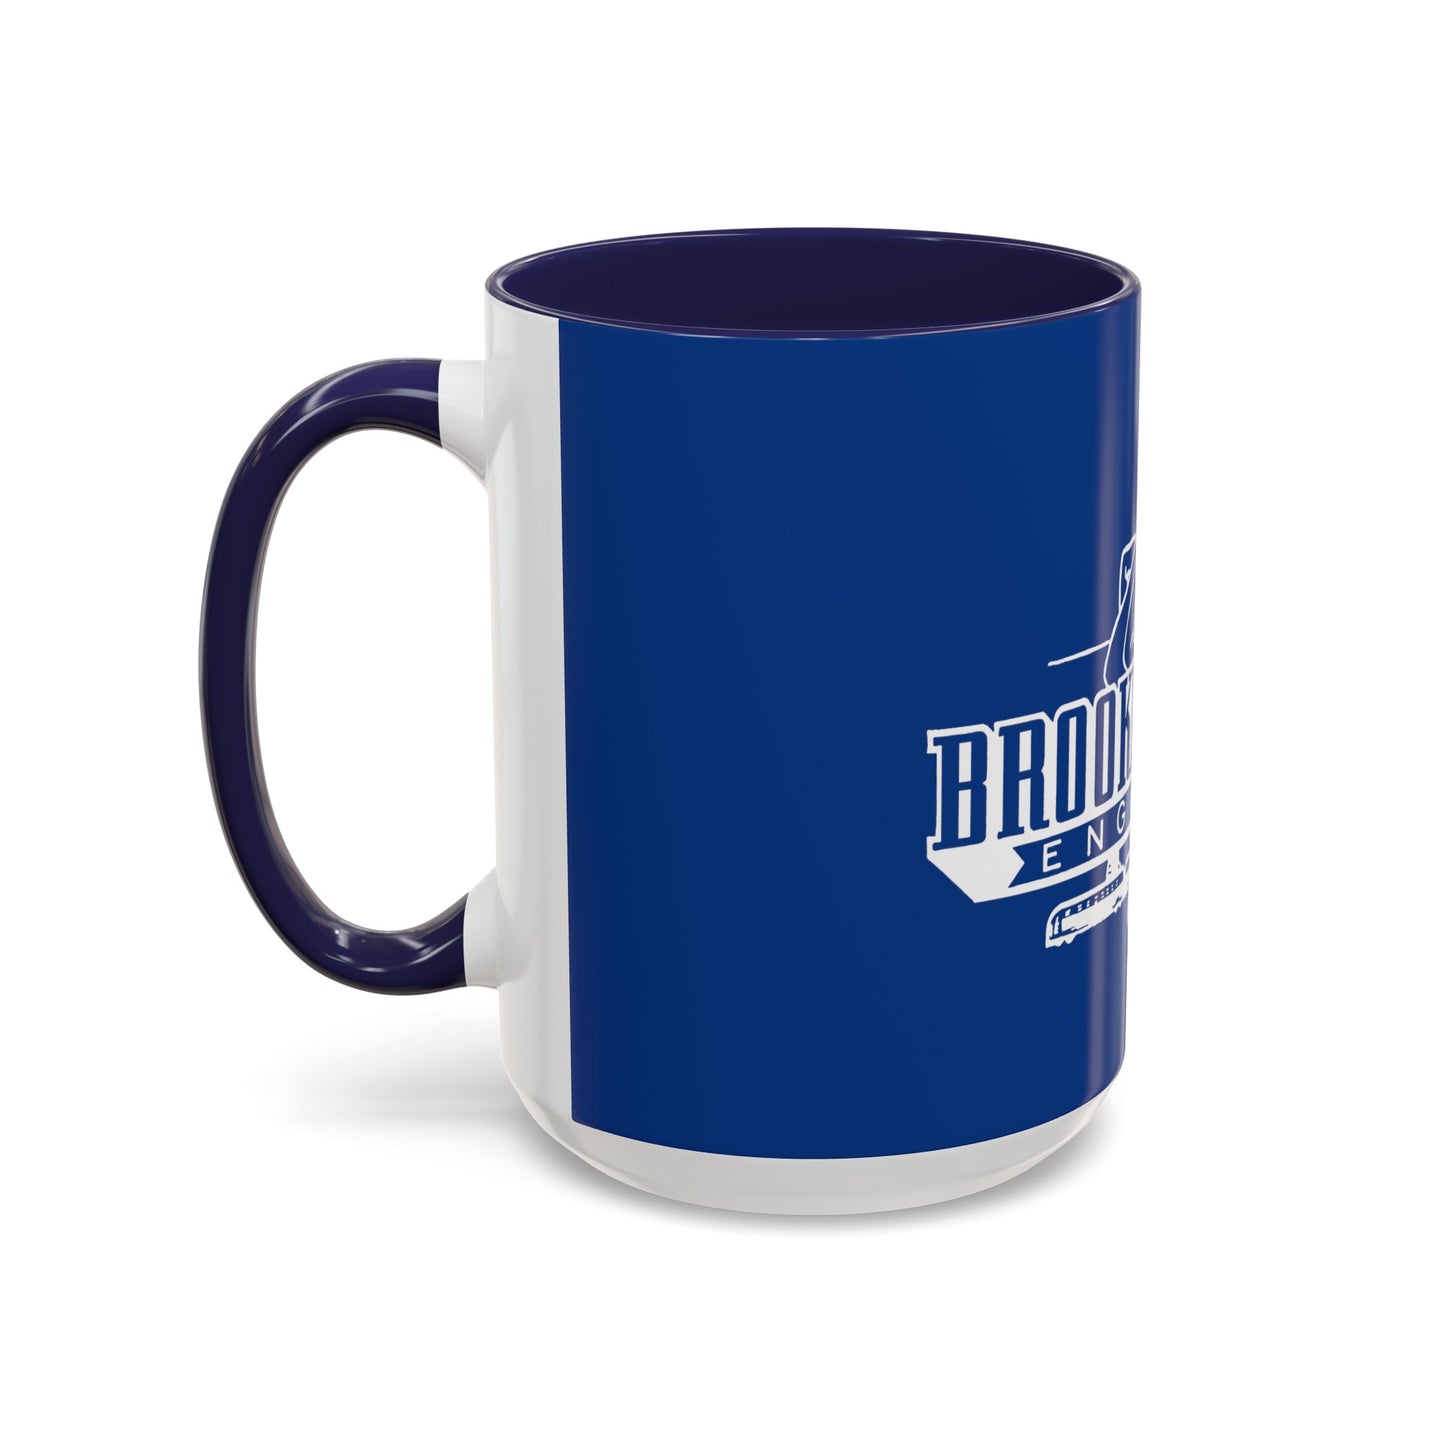 Vintage - Joe Engineer - Accent Mug - Navy